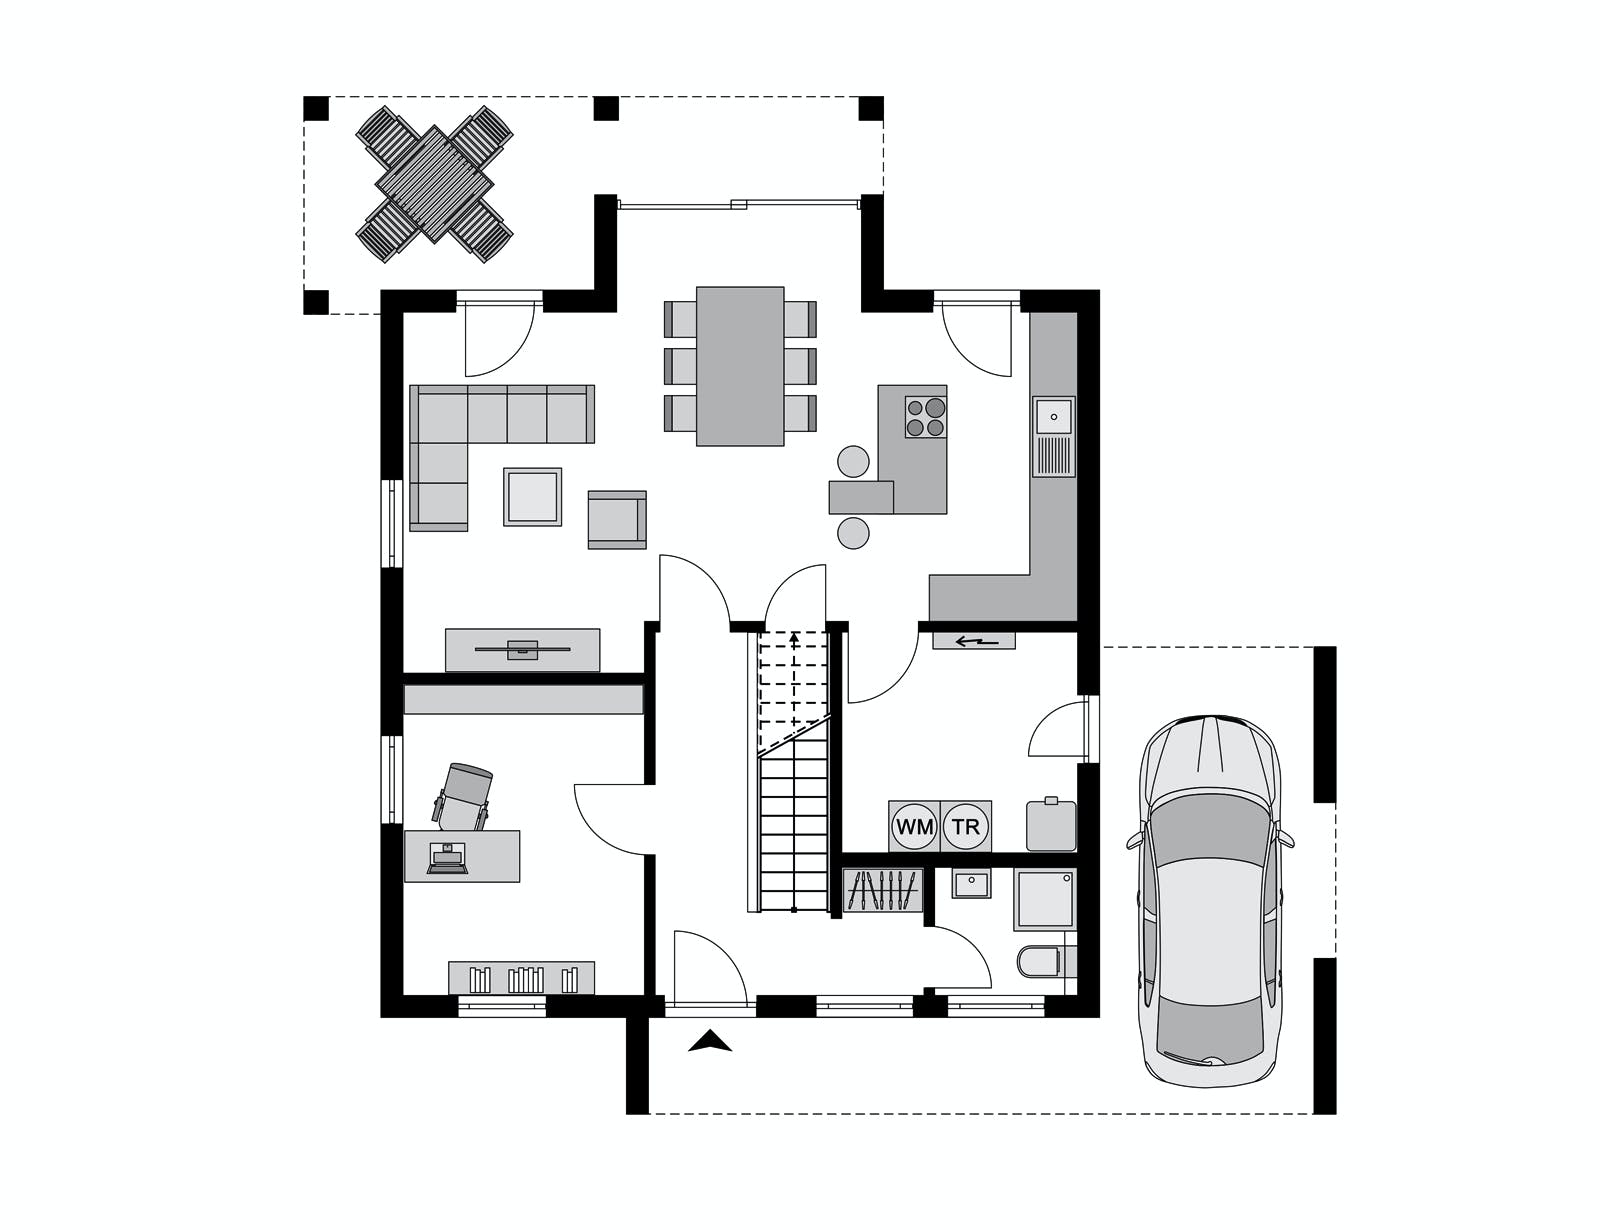 Fertighaus Klassiker CITY Gestaltungsidee GL 02 von STREIF Haus, Cubushaus Grundriss 1